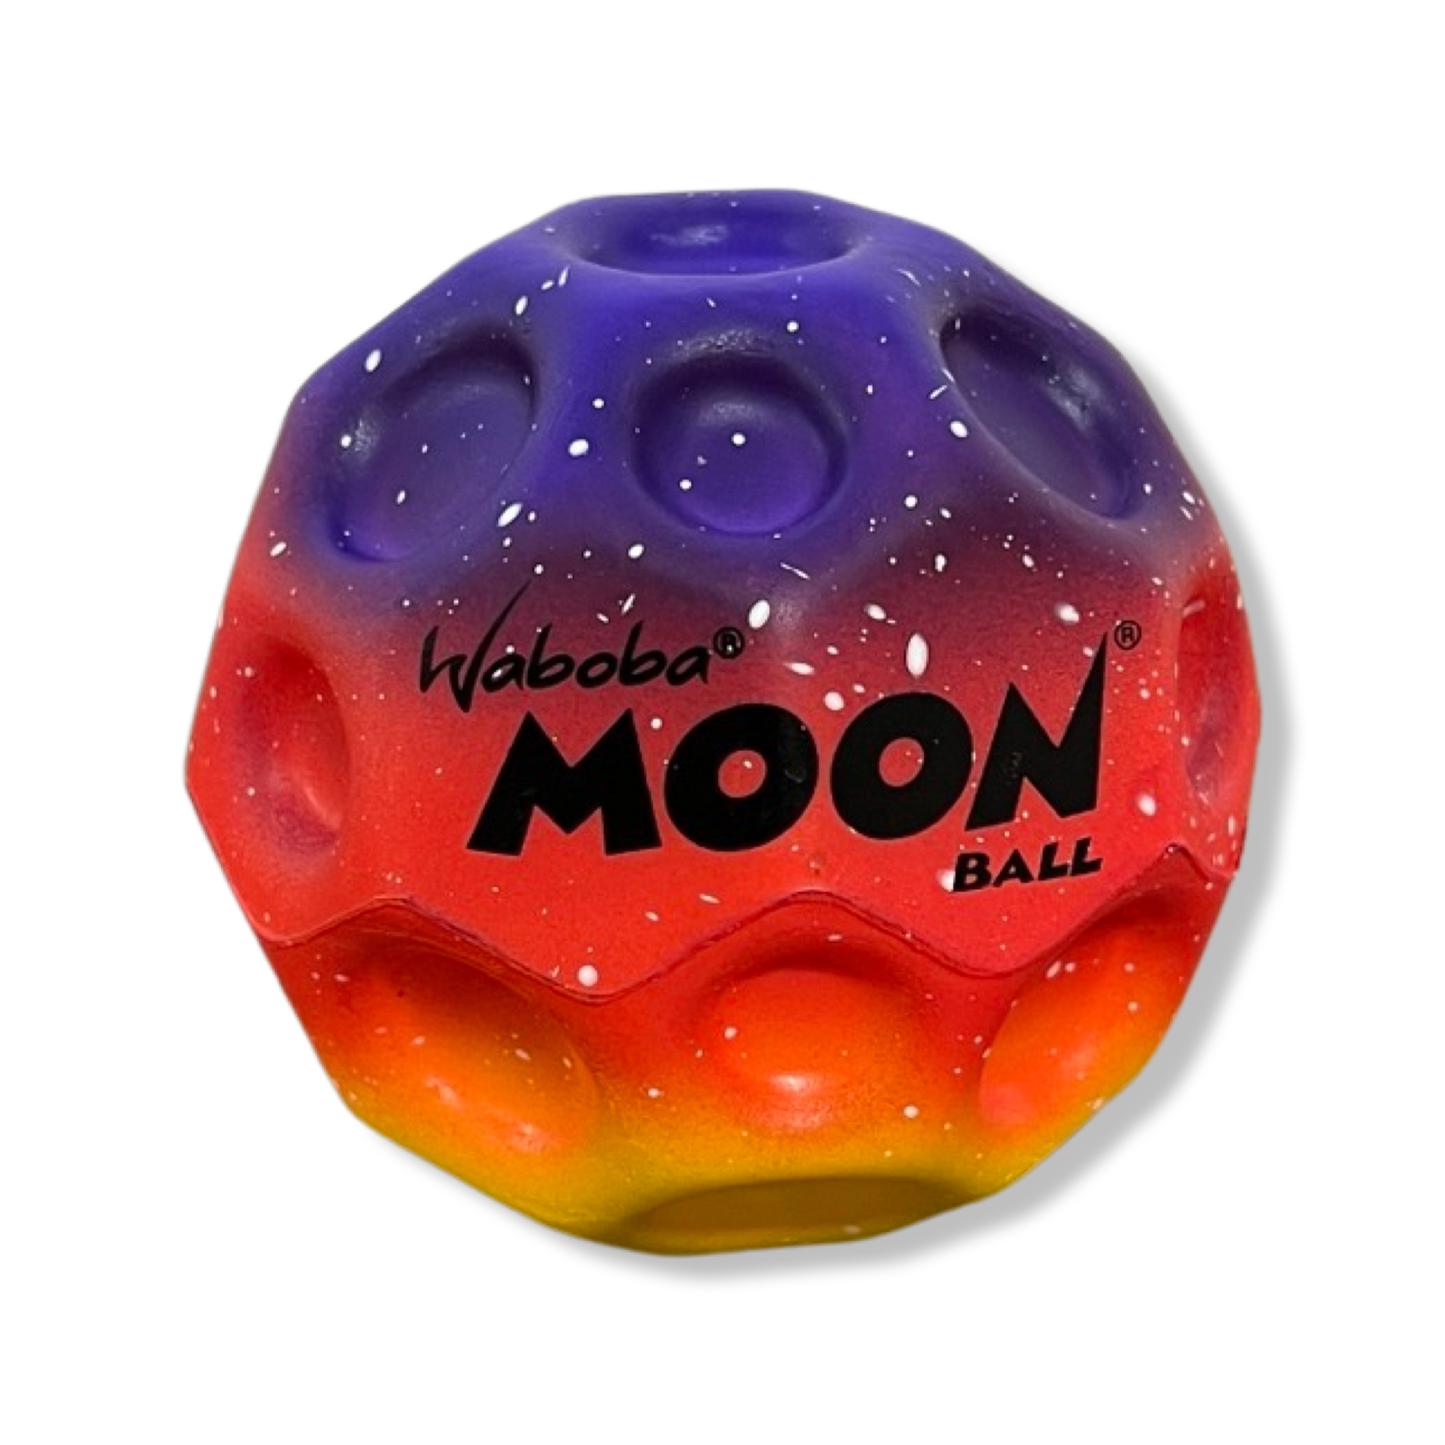 Moonball "Gradient" 2